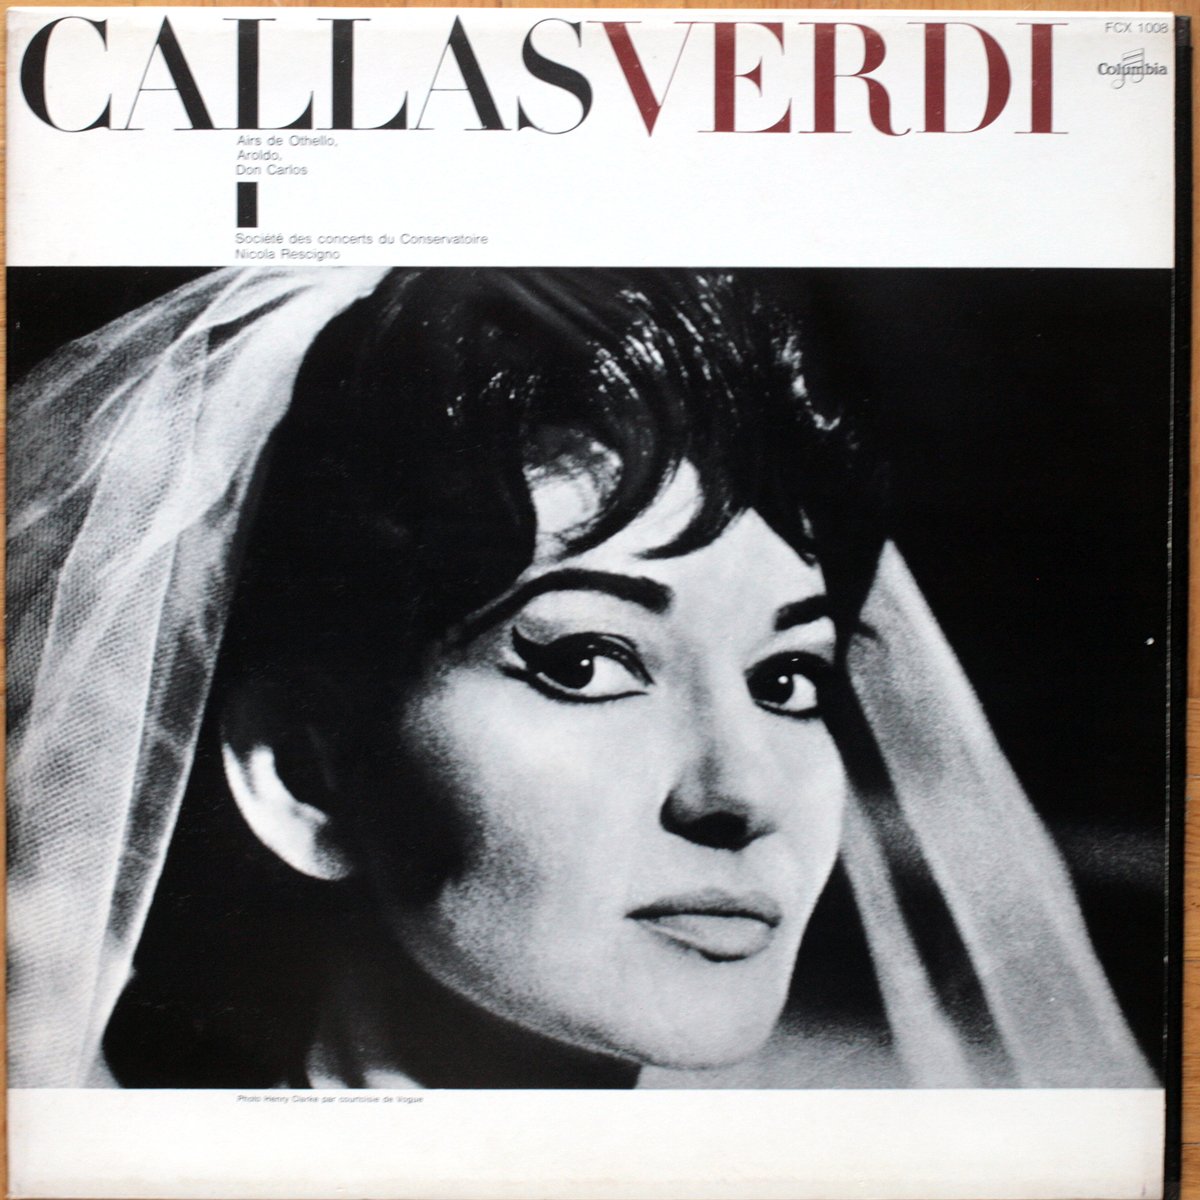 Callas • Verdi • Les héroines de Verdi • Vol. 1 • Columbia ‎FCX 1008 • Maria Callas • Orchestre de la Société des Concerts du Conservatoire • Nicola Rescigno